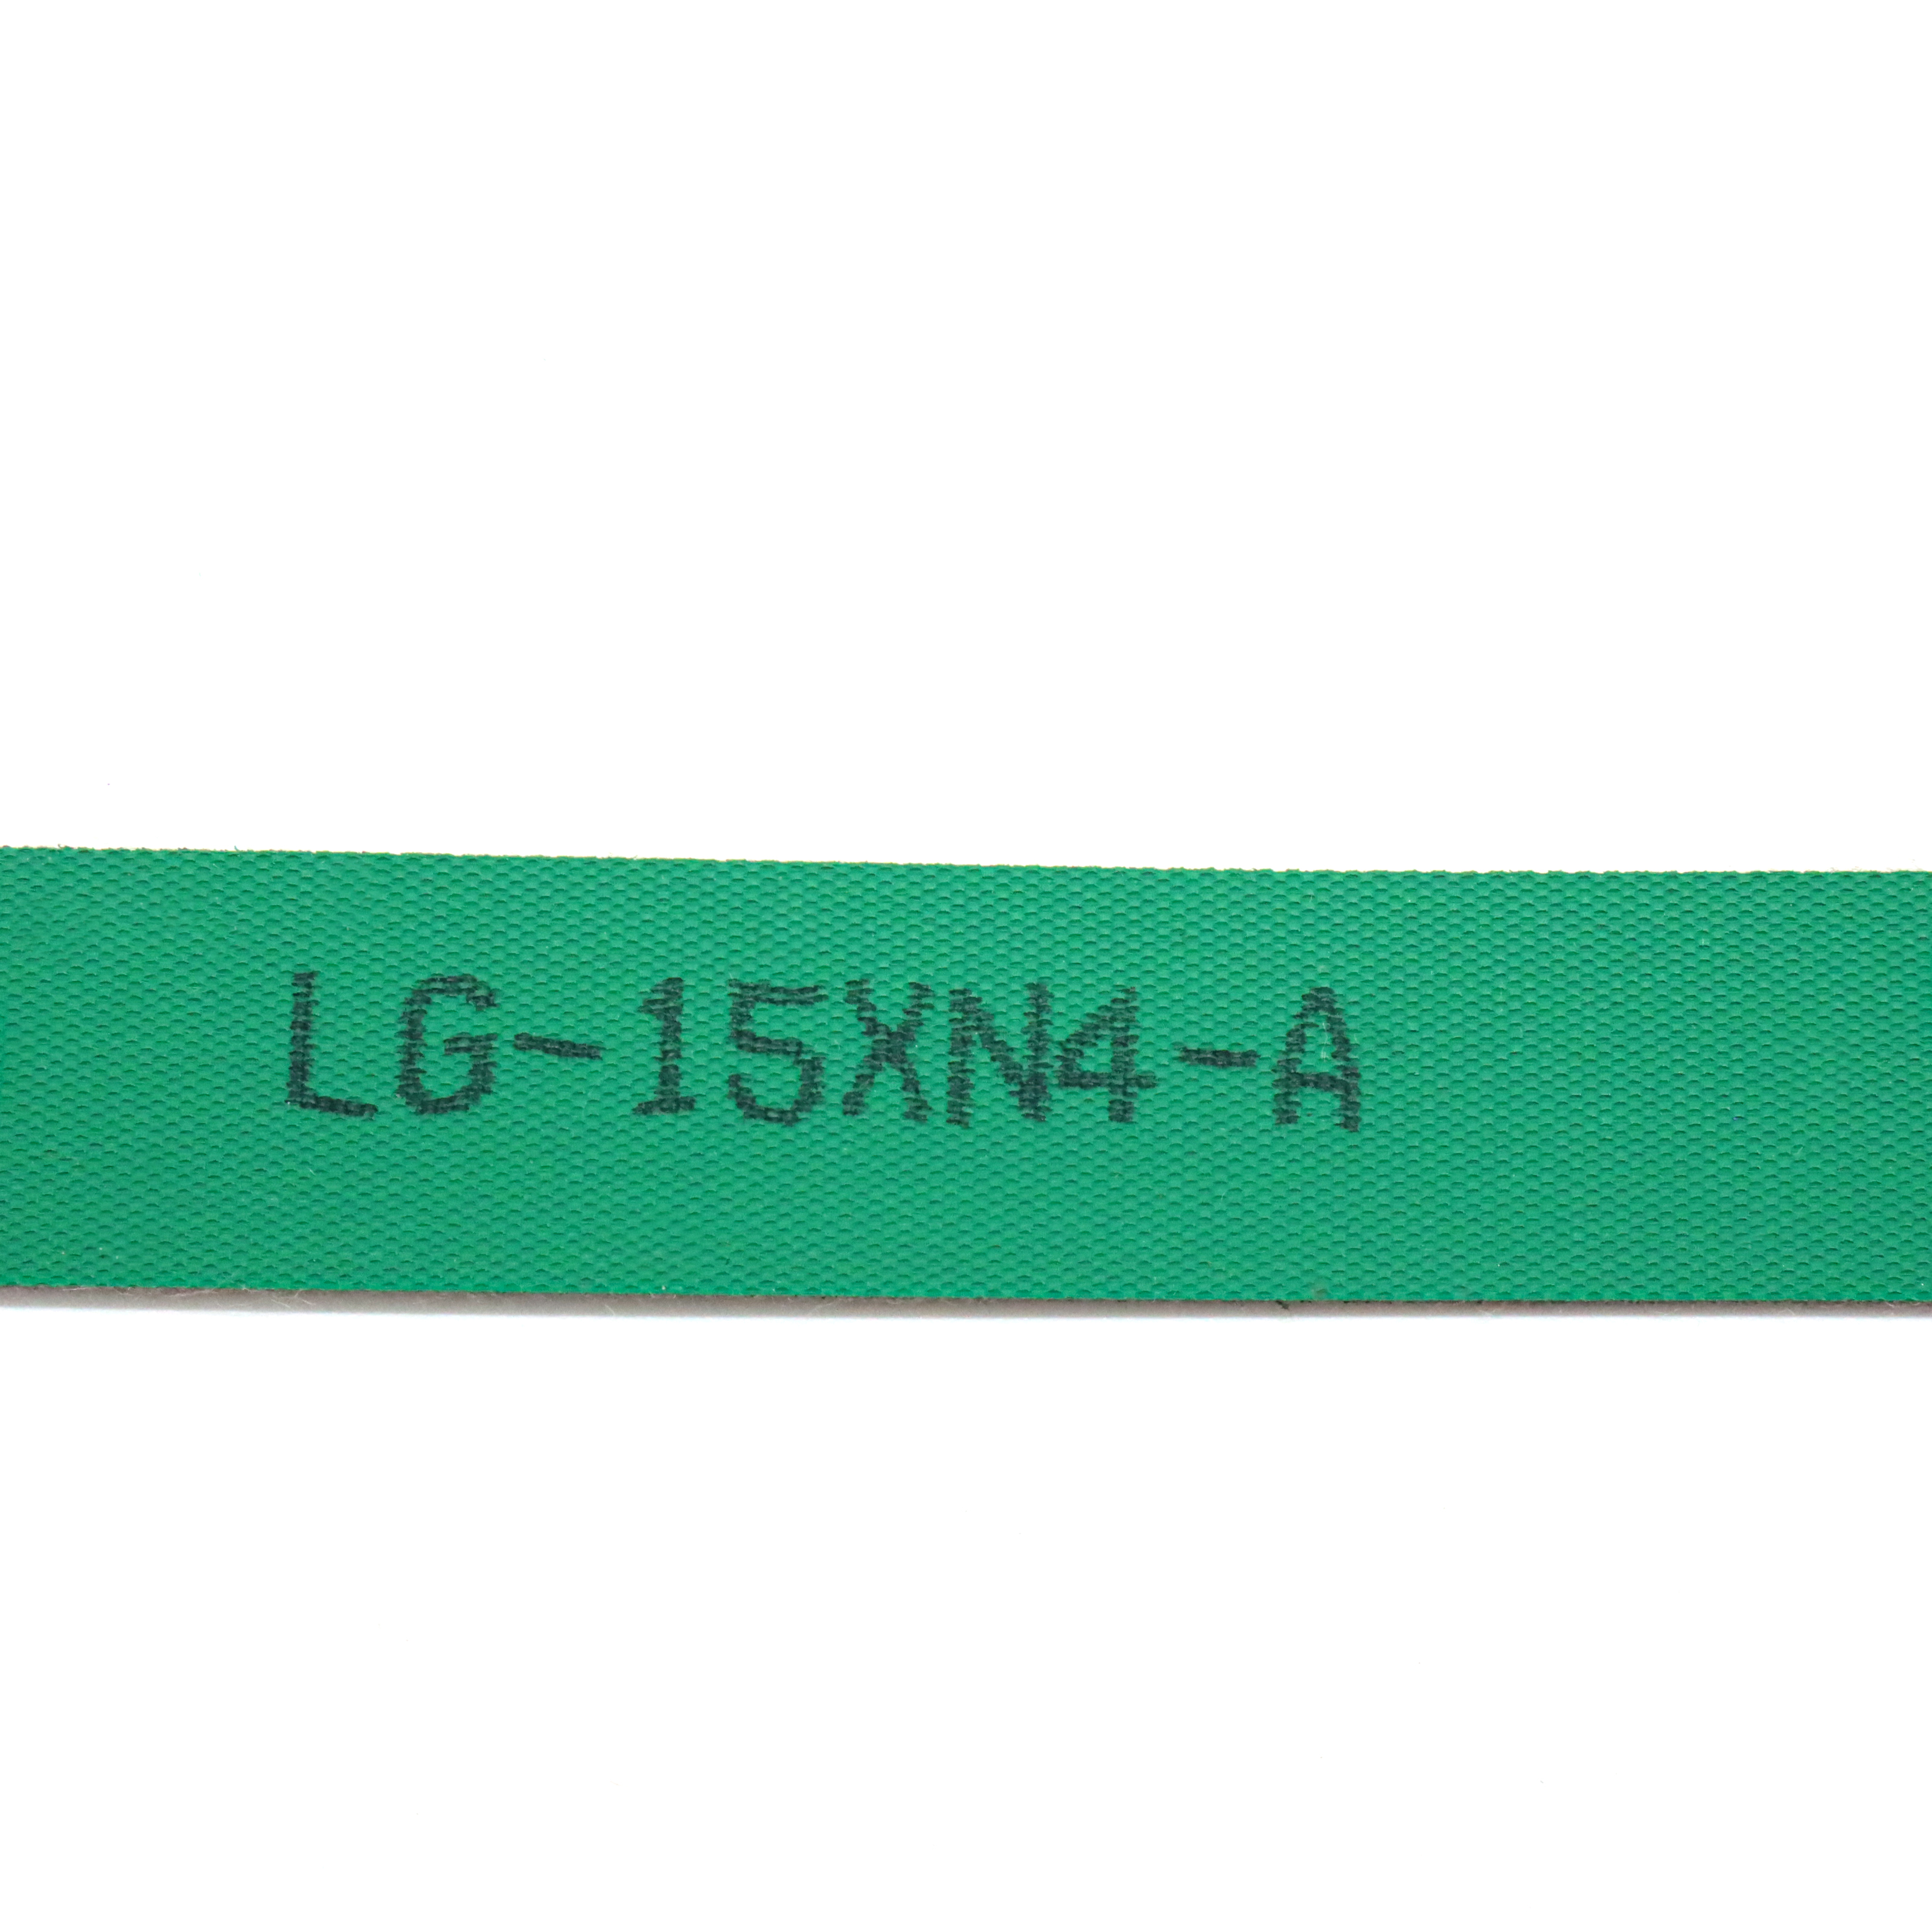 LG-15XN4-A